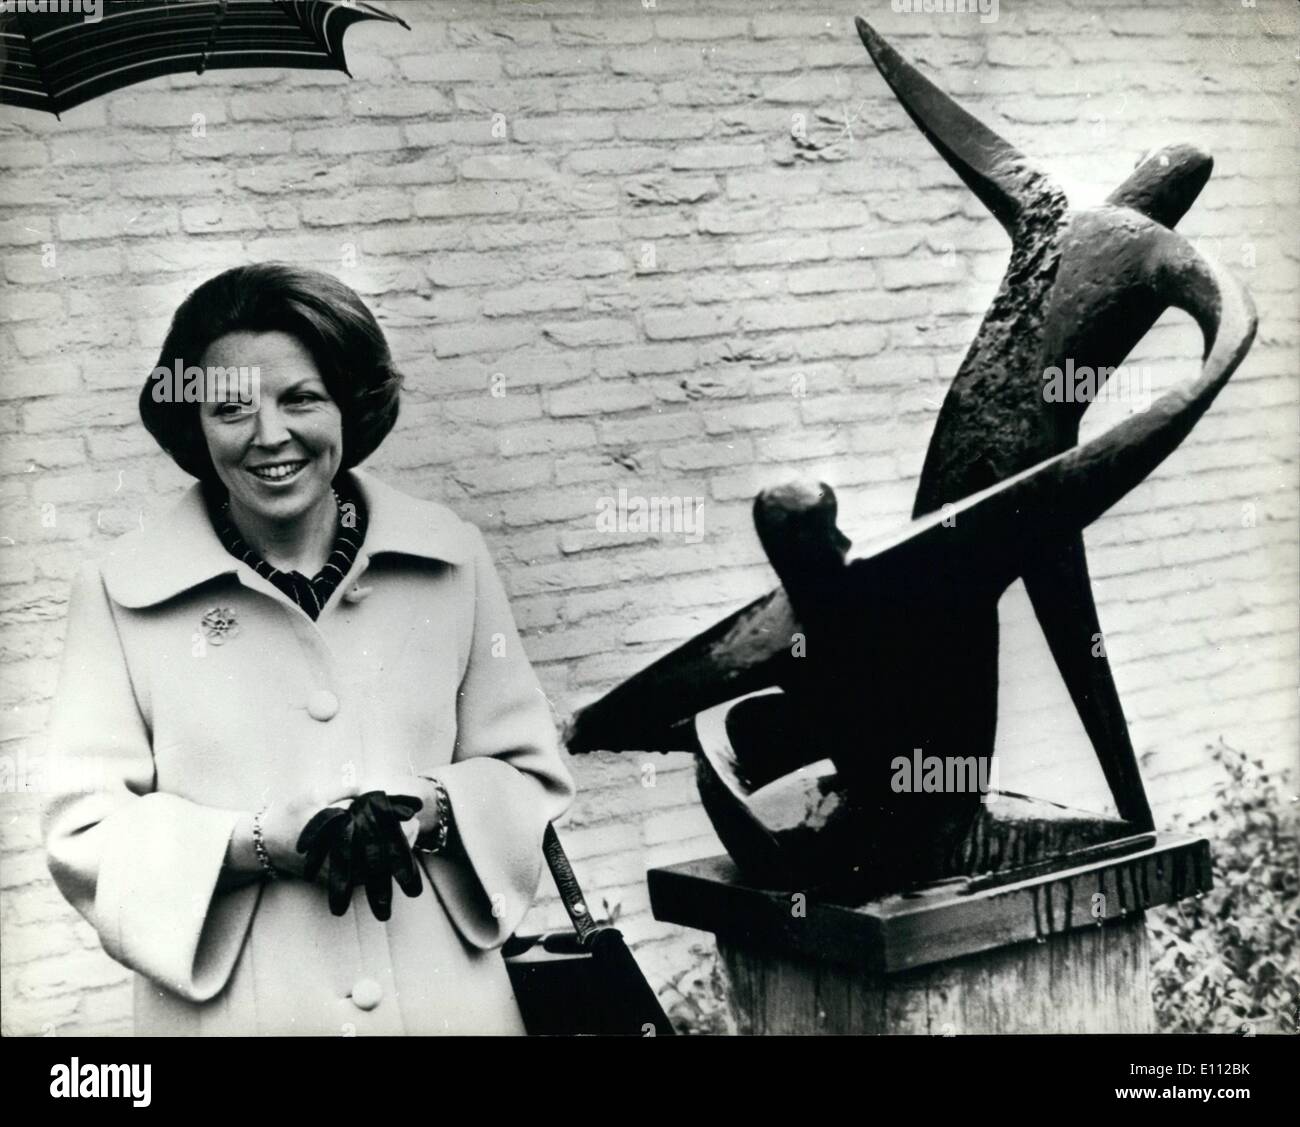 Maggio 05, 1975 - Olandese Princess svela la sua propria scultura: Princess Beatrix, dei Paesi Bassi, ha recentemente presentato un pezzo della scultura realizzata da sé, in memoria delle vittime dei campi di concentramento. La foto mostra: Princess Beatrix con la sua scultura che ha svelato a Oegstgeest in Olanda. Foto Stock